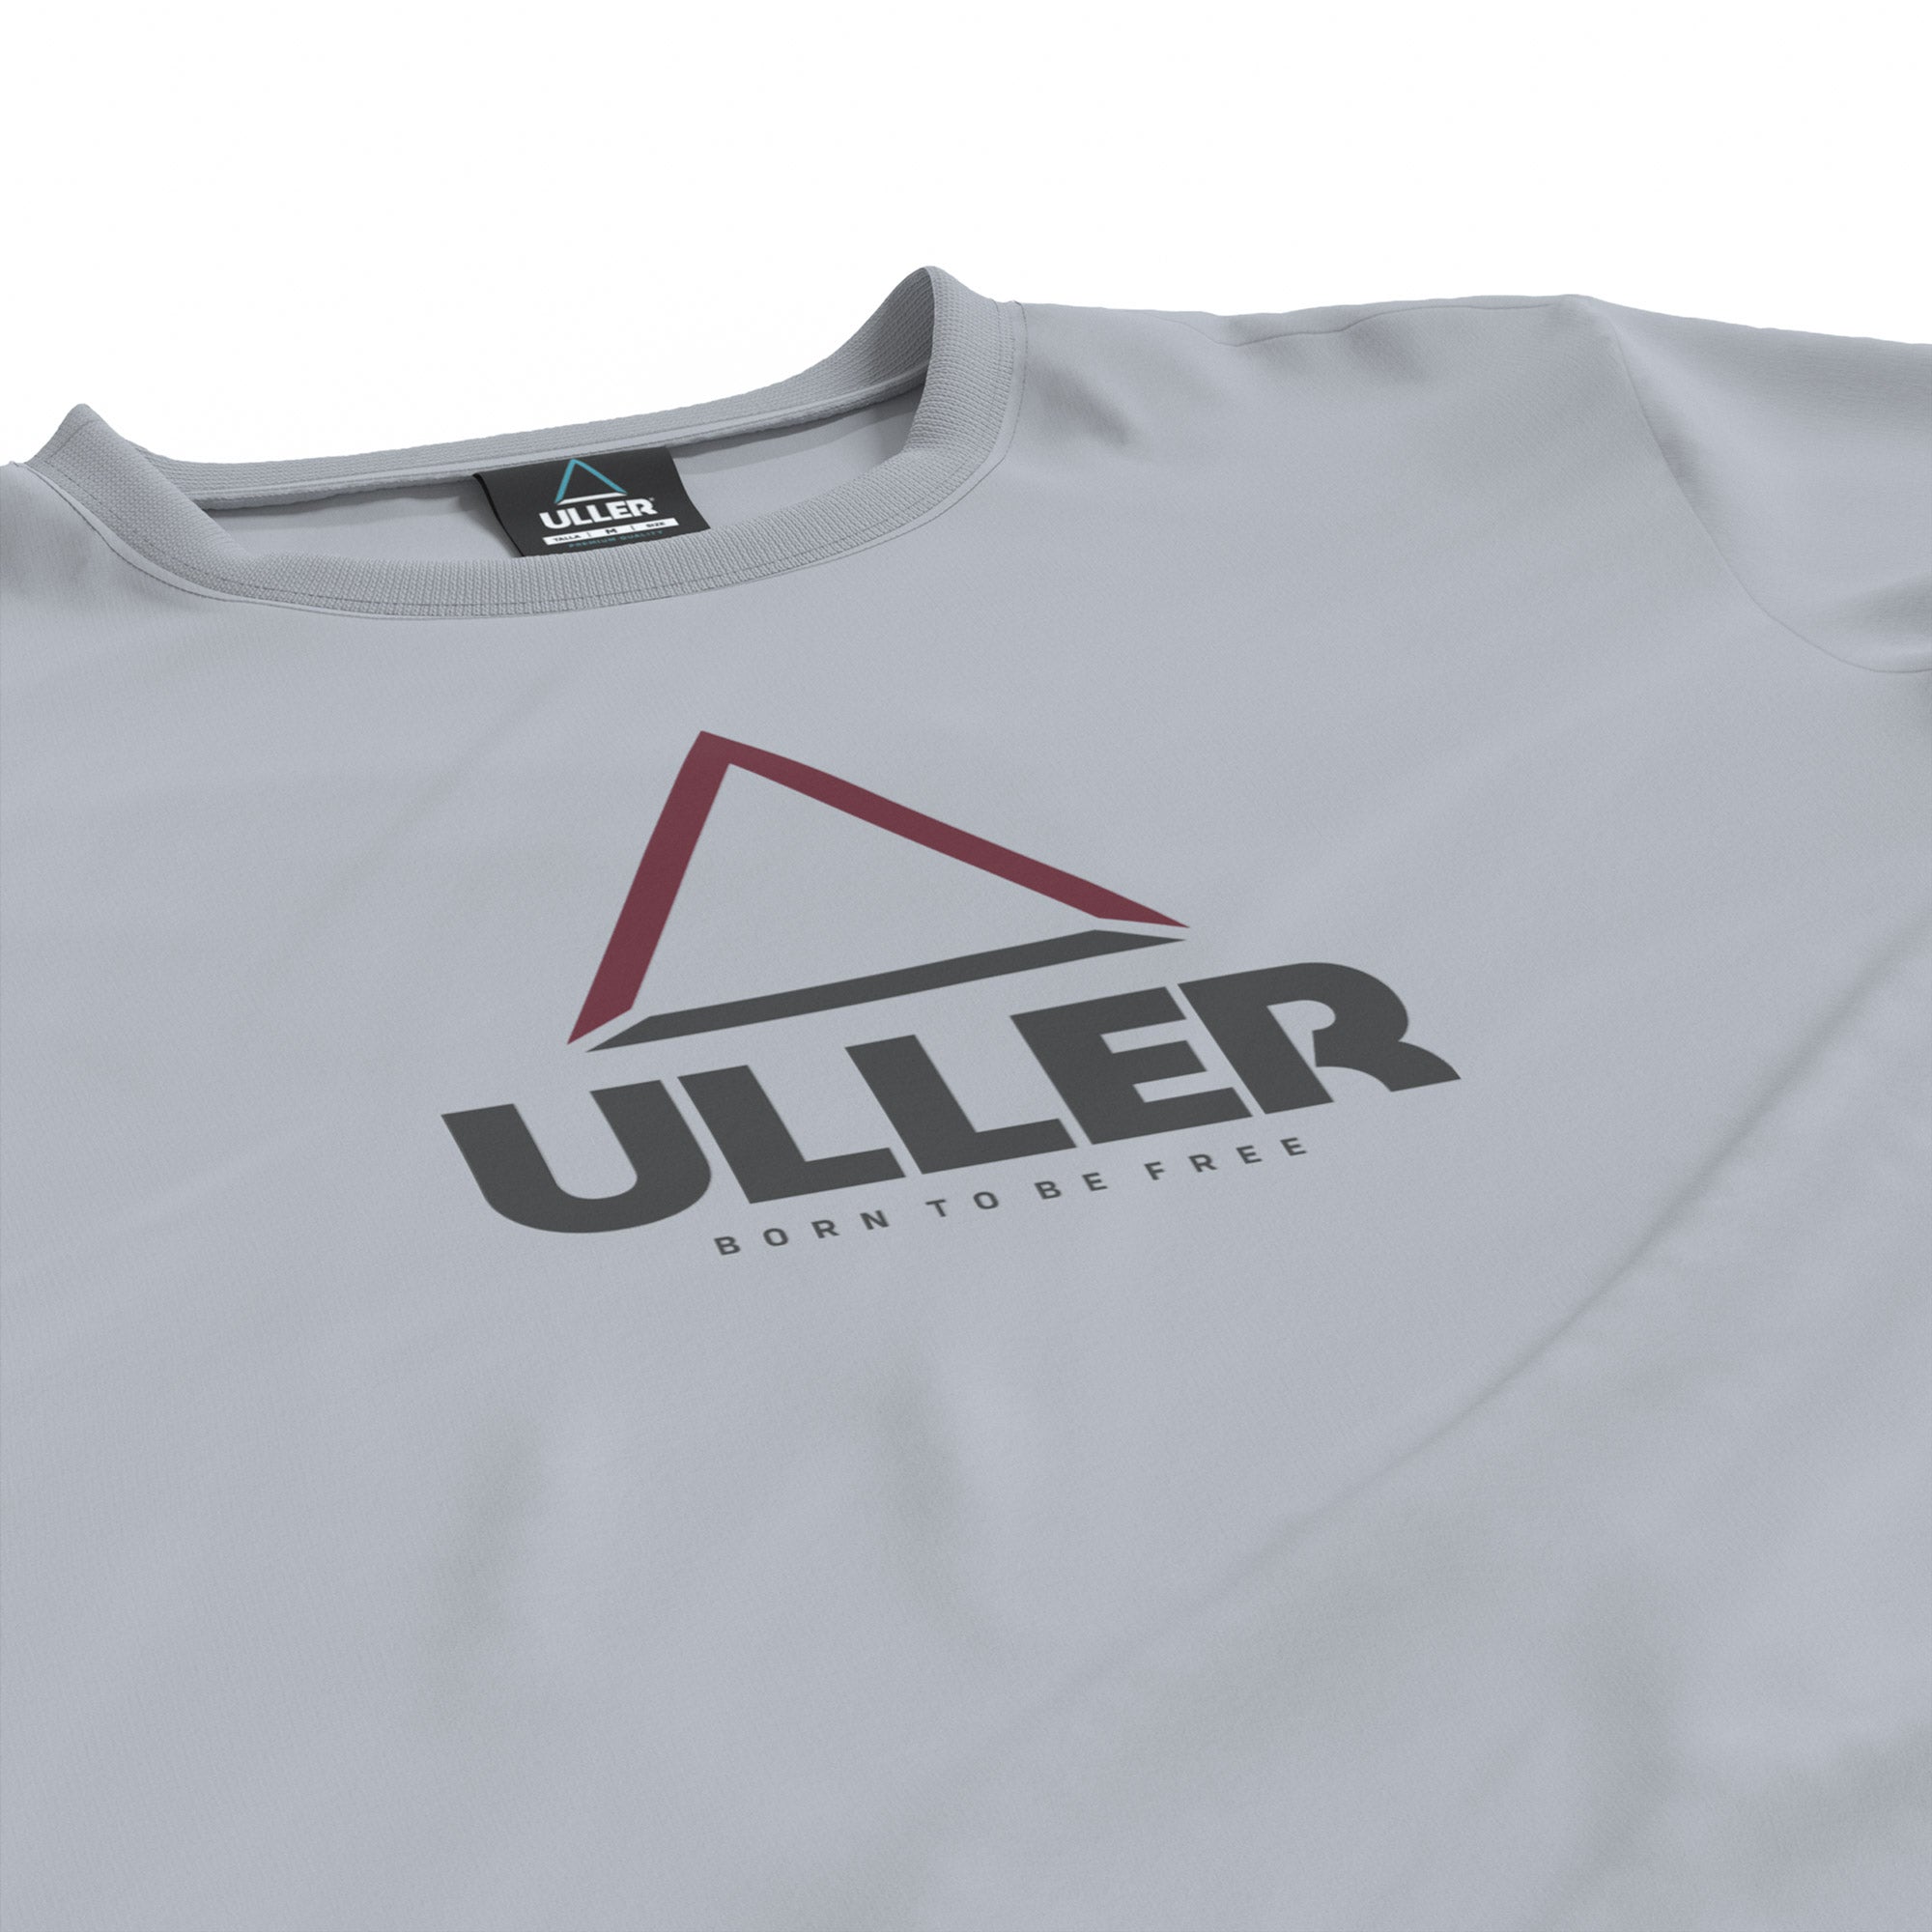 Camiseta Uller Classic - Gris  MKP